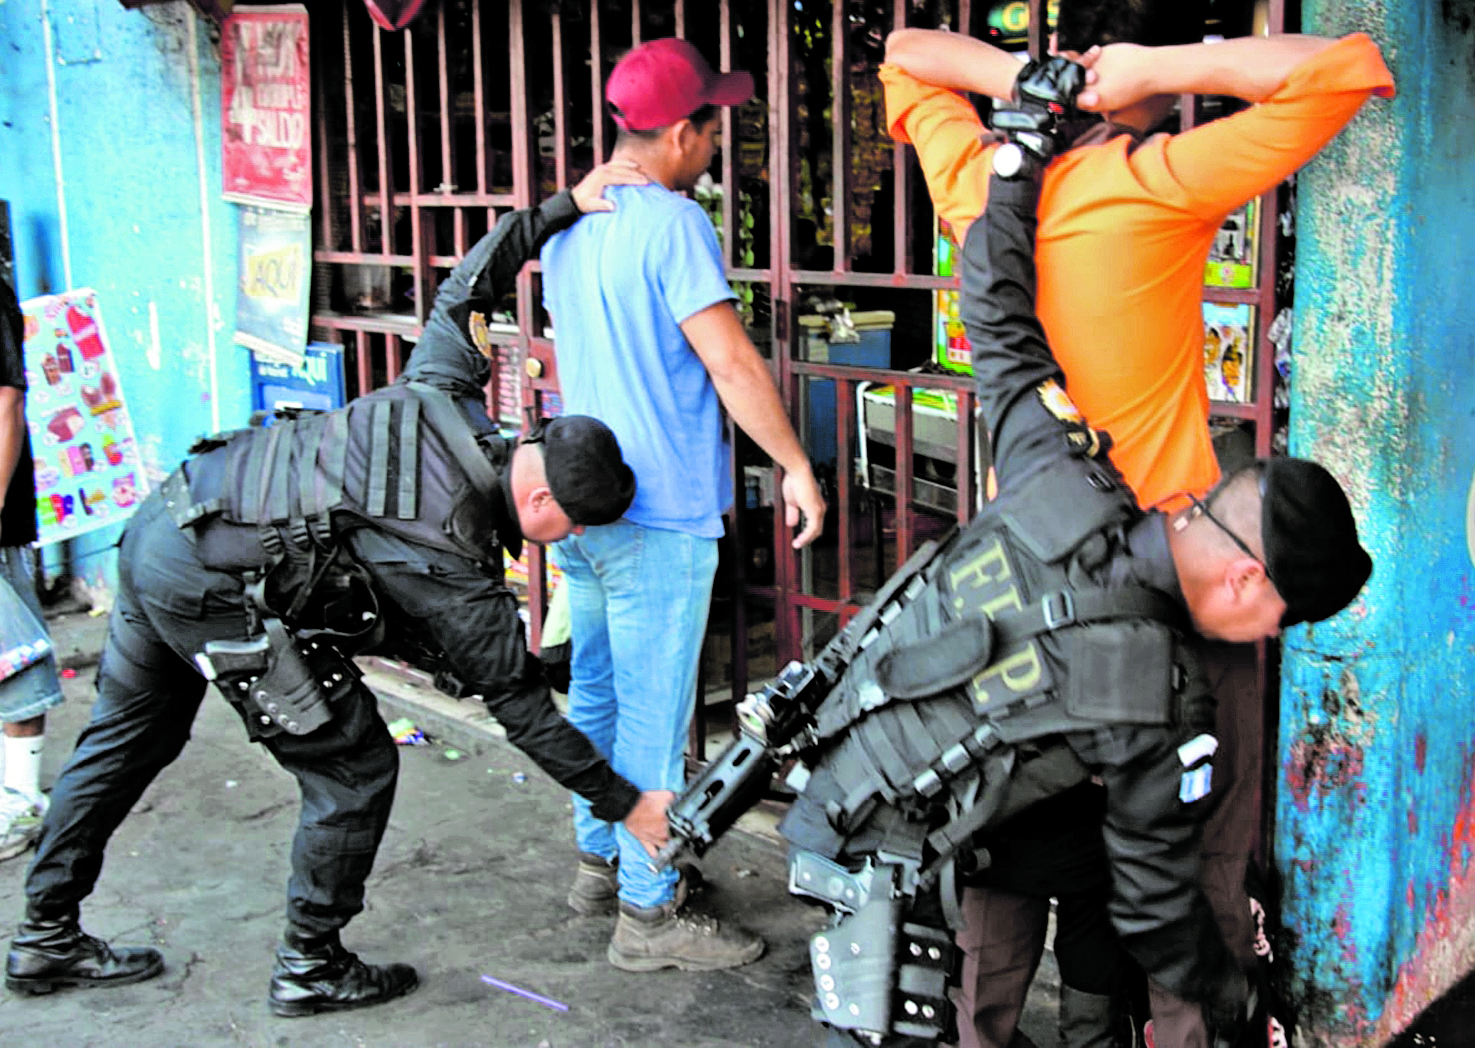 La PNC reitera que un agente no puede registrar los bolsillos de quienes son revisados. (Foto Prensa Libre: Hemeroteca PL)